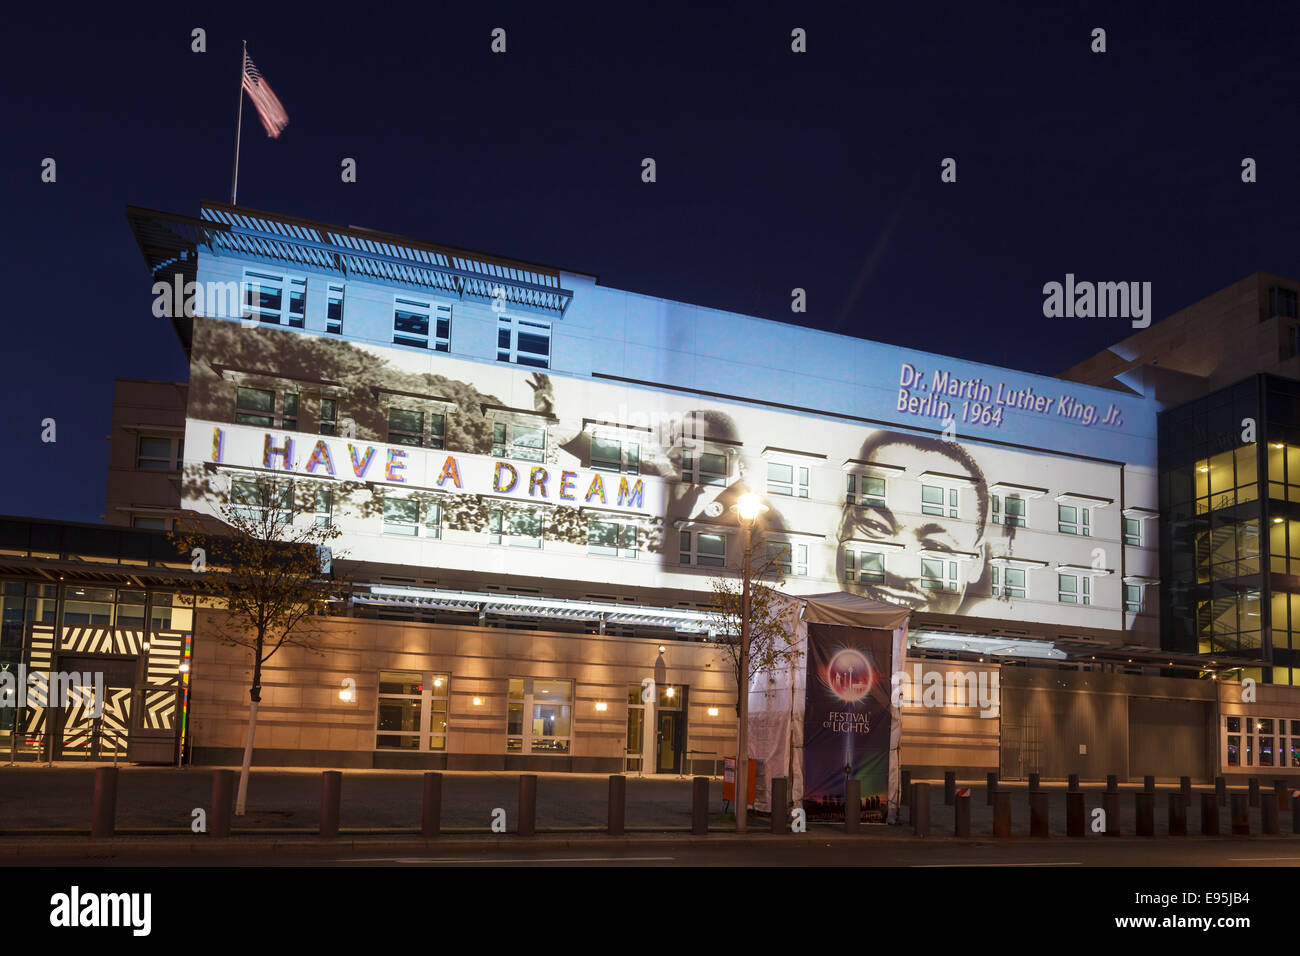 Ambassade des États-Unis avec projection pour la Fête des Lumières 2014, Berlin, Allemagne Banque D'Images